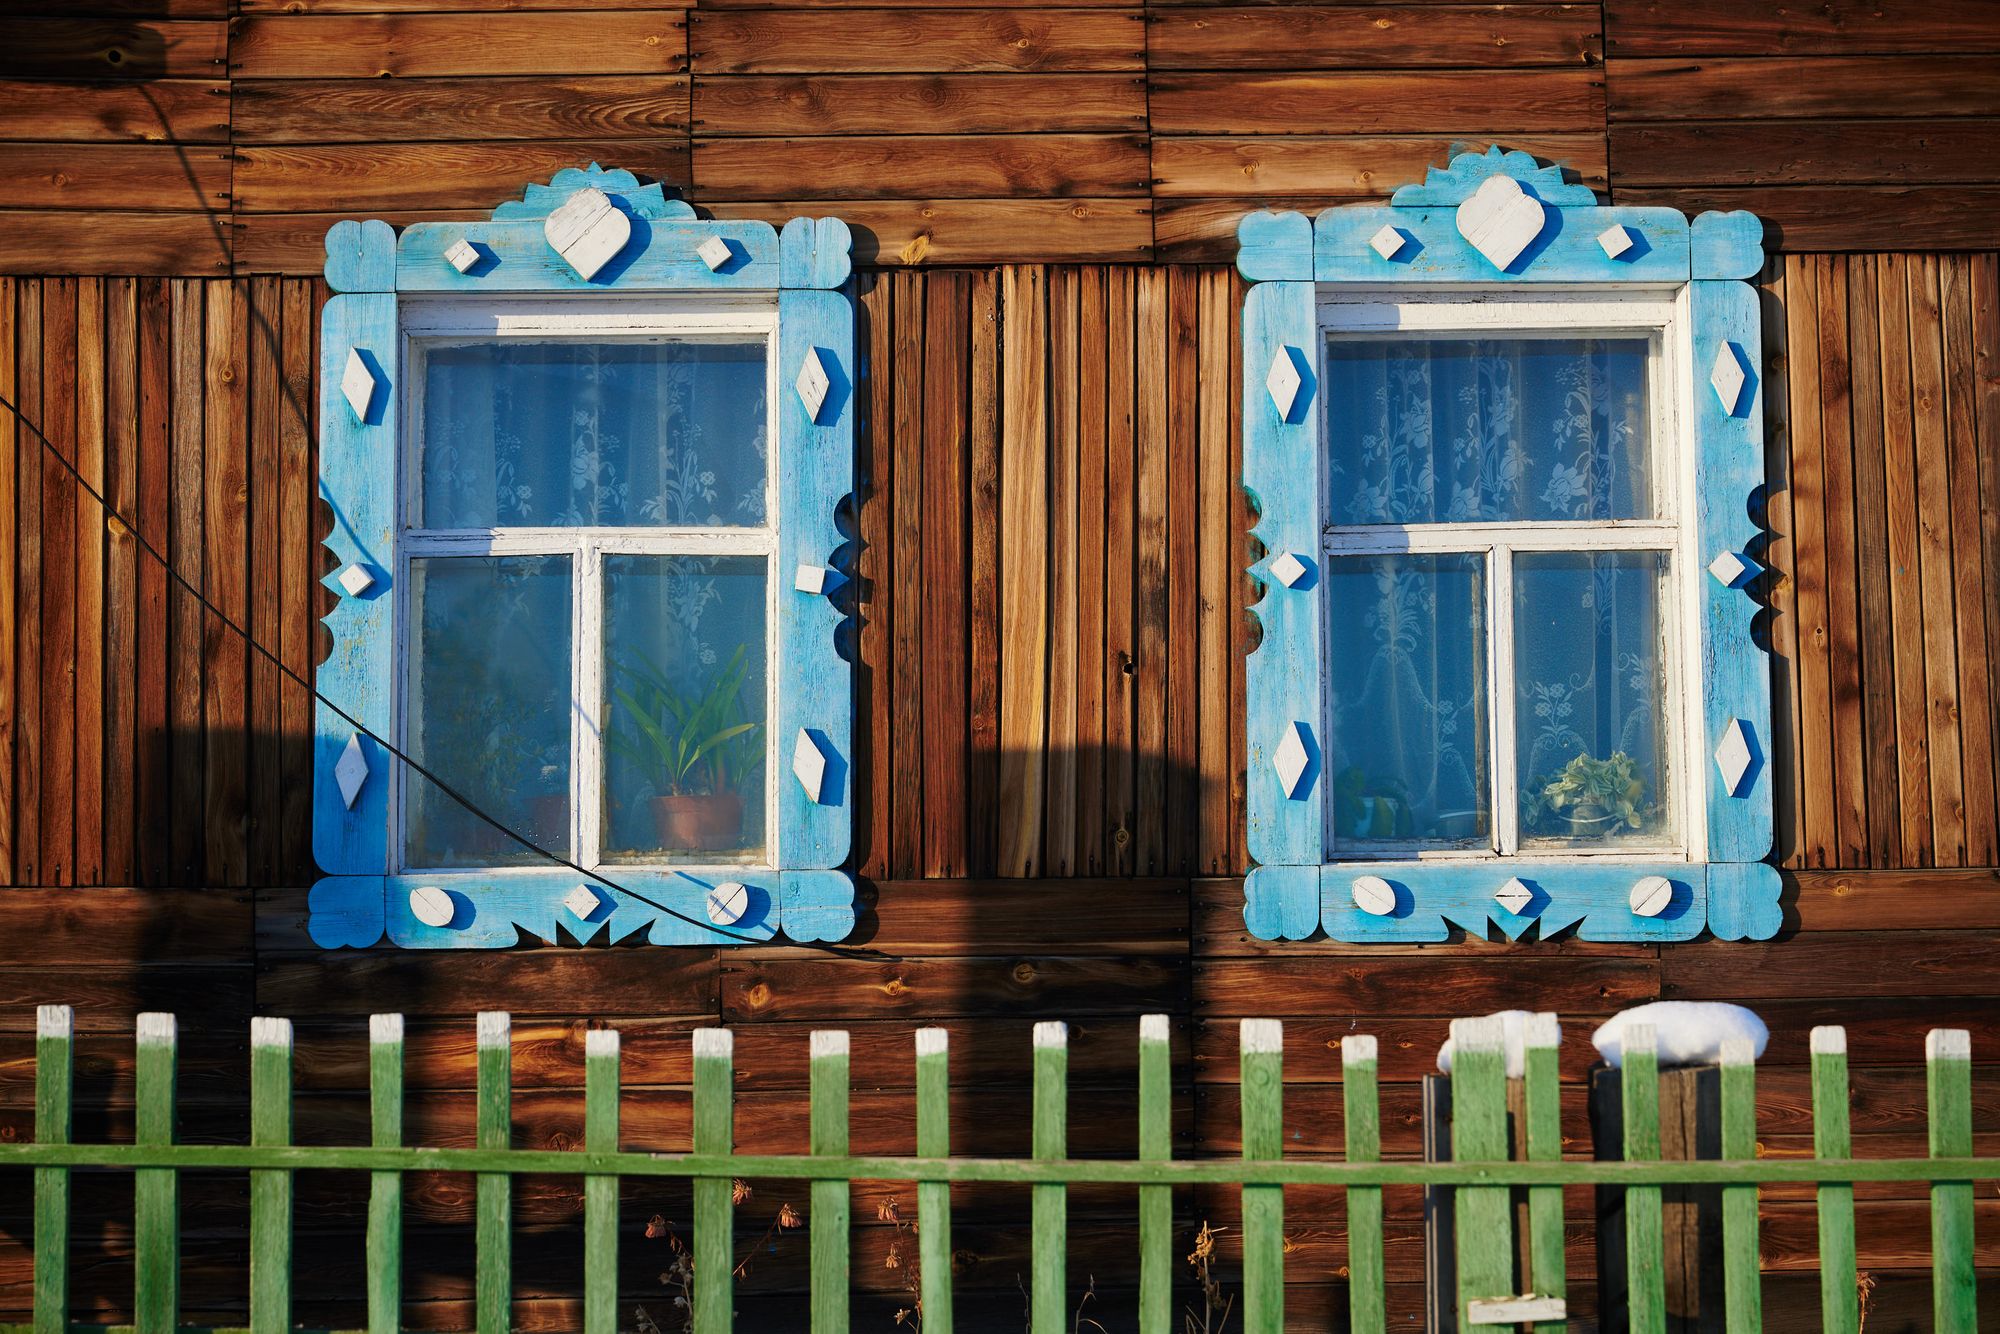 Baikal, a winter wonderland